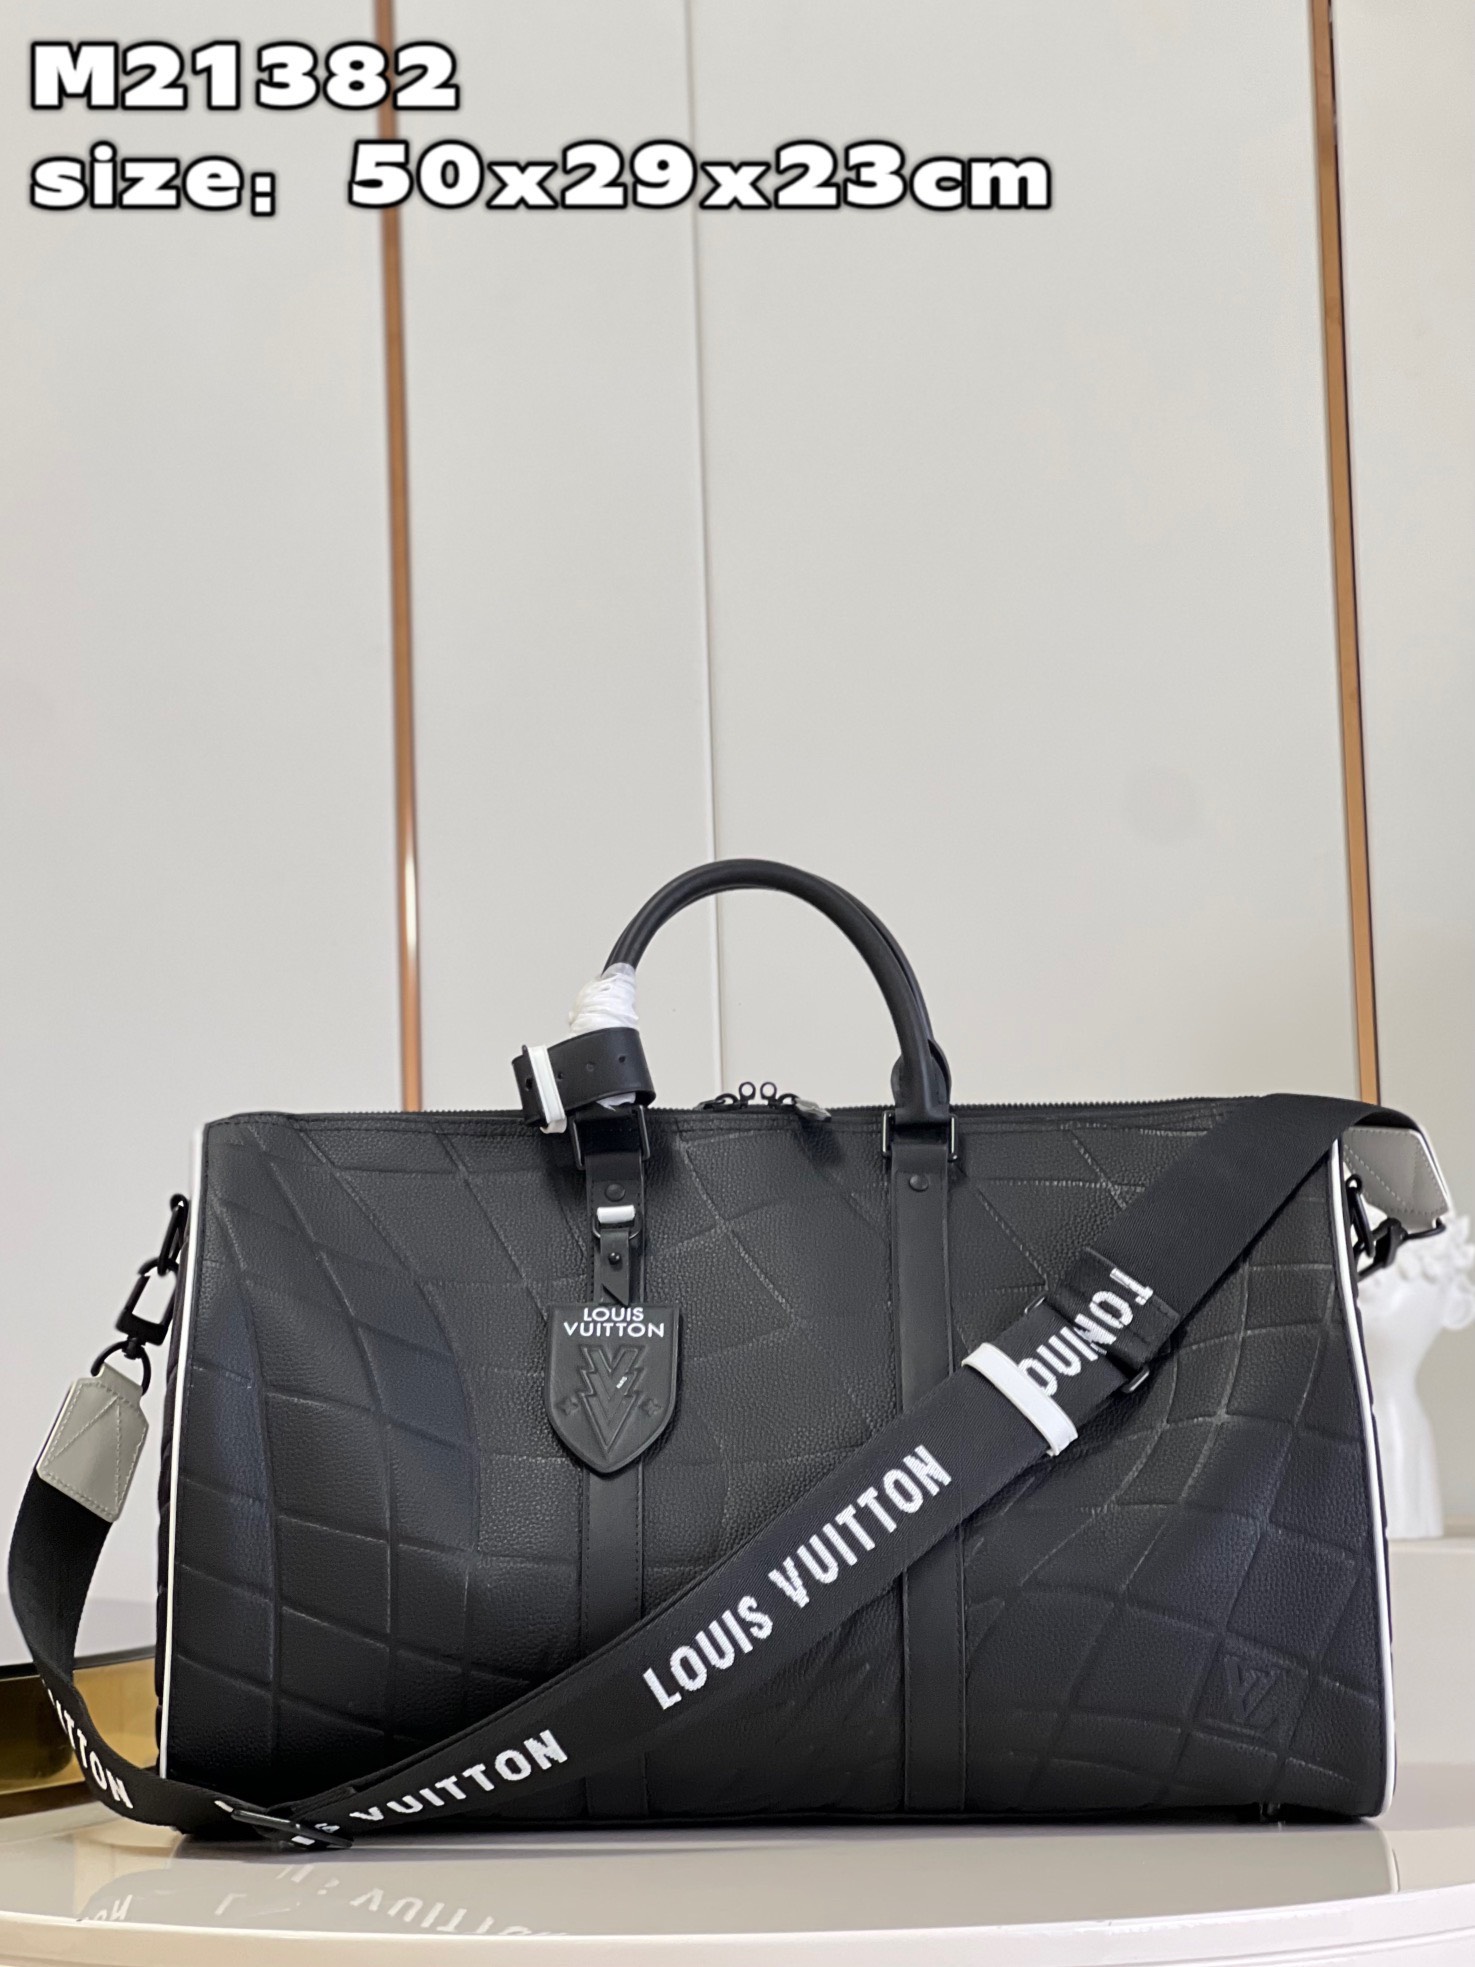 Túi xách Louis Vuitton Siêu Cấp RLCLV2549